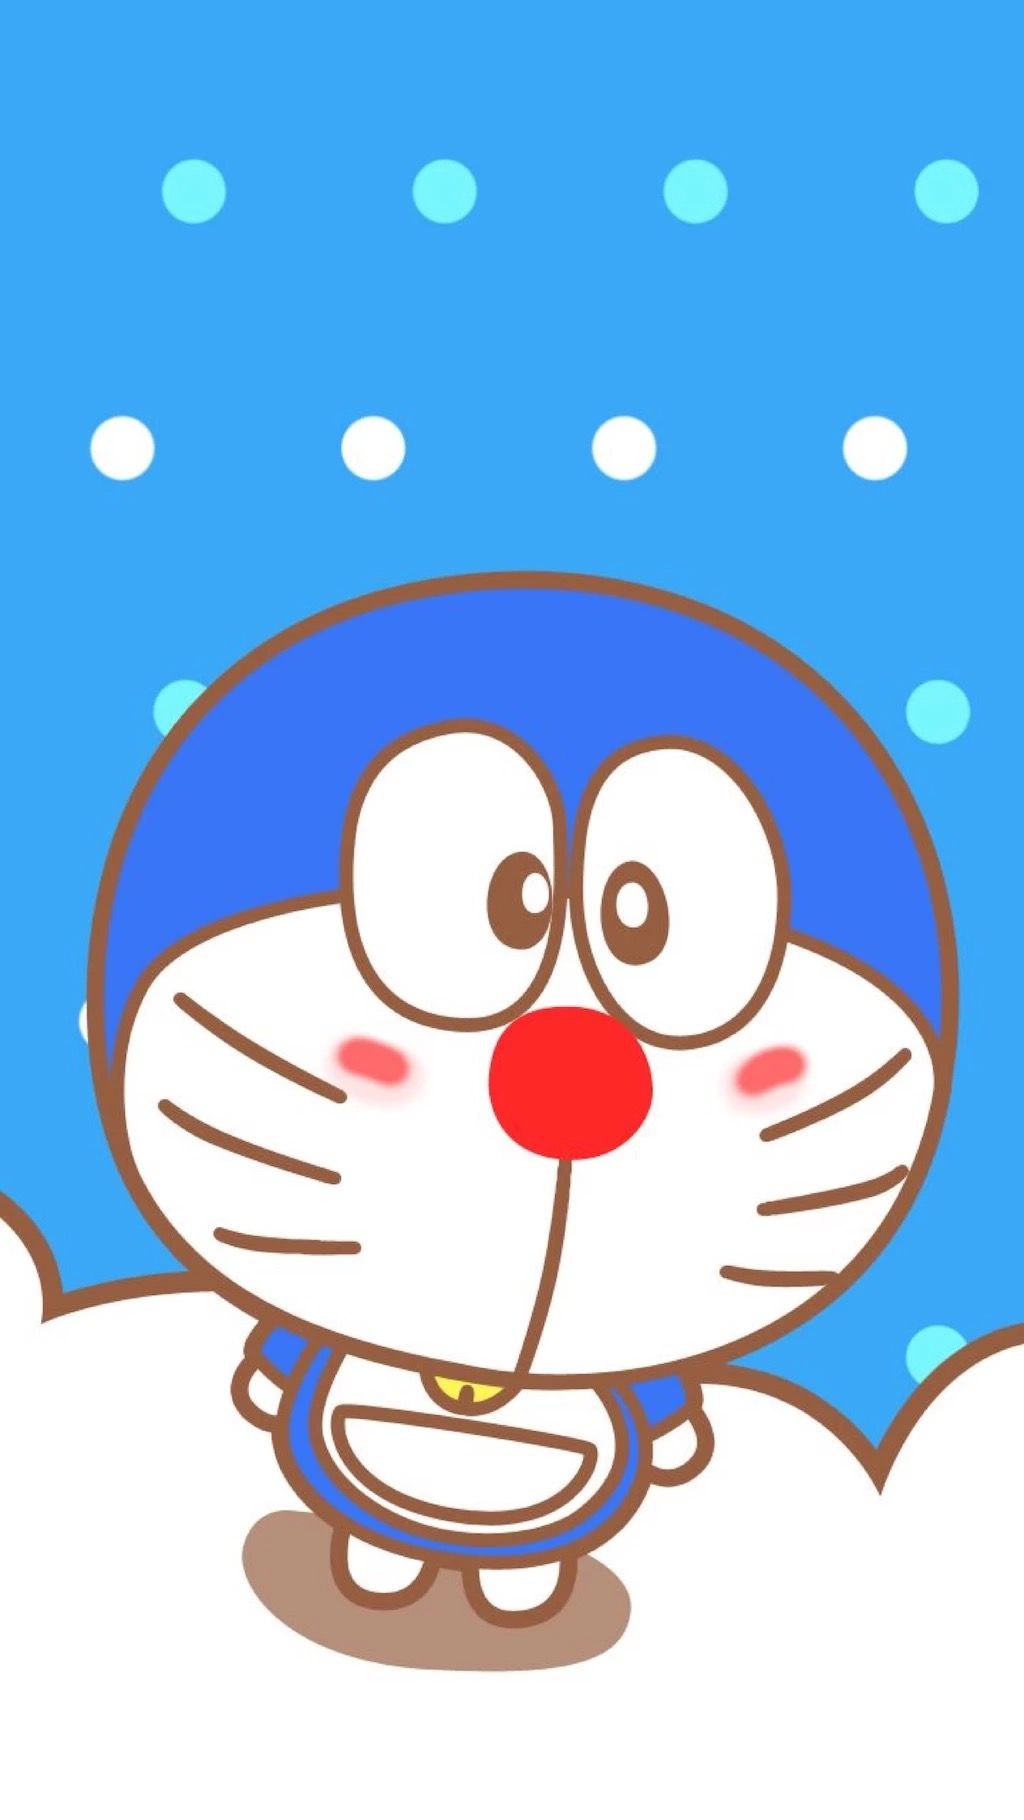 Hình nền Doraemon đẹp cho máy tính và điện thoại  Quantrimangcom   Doraemon Thiệp Giấy viết